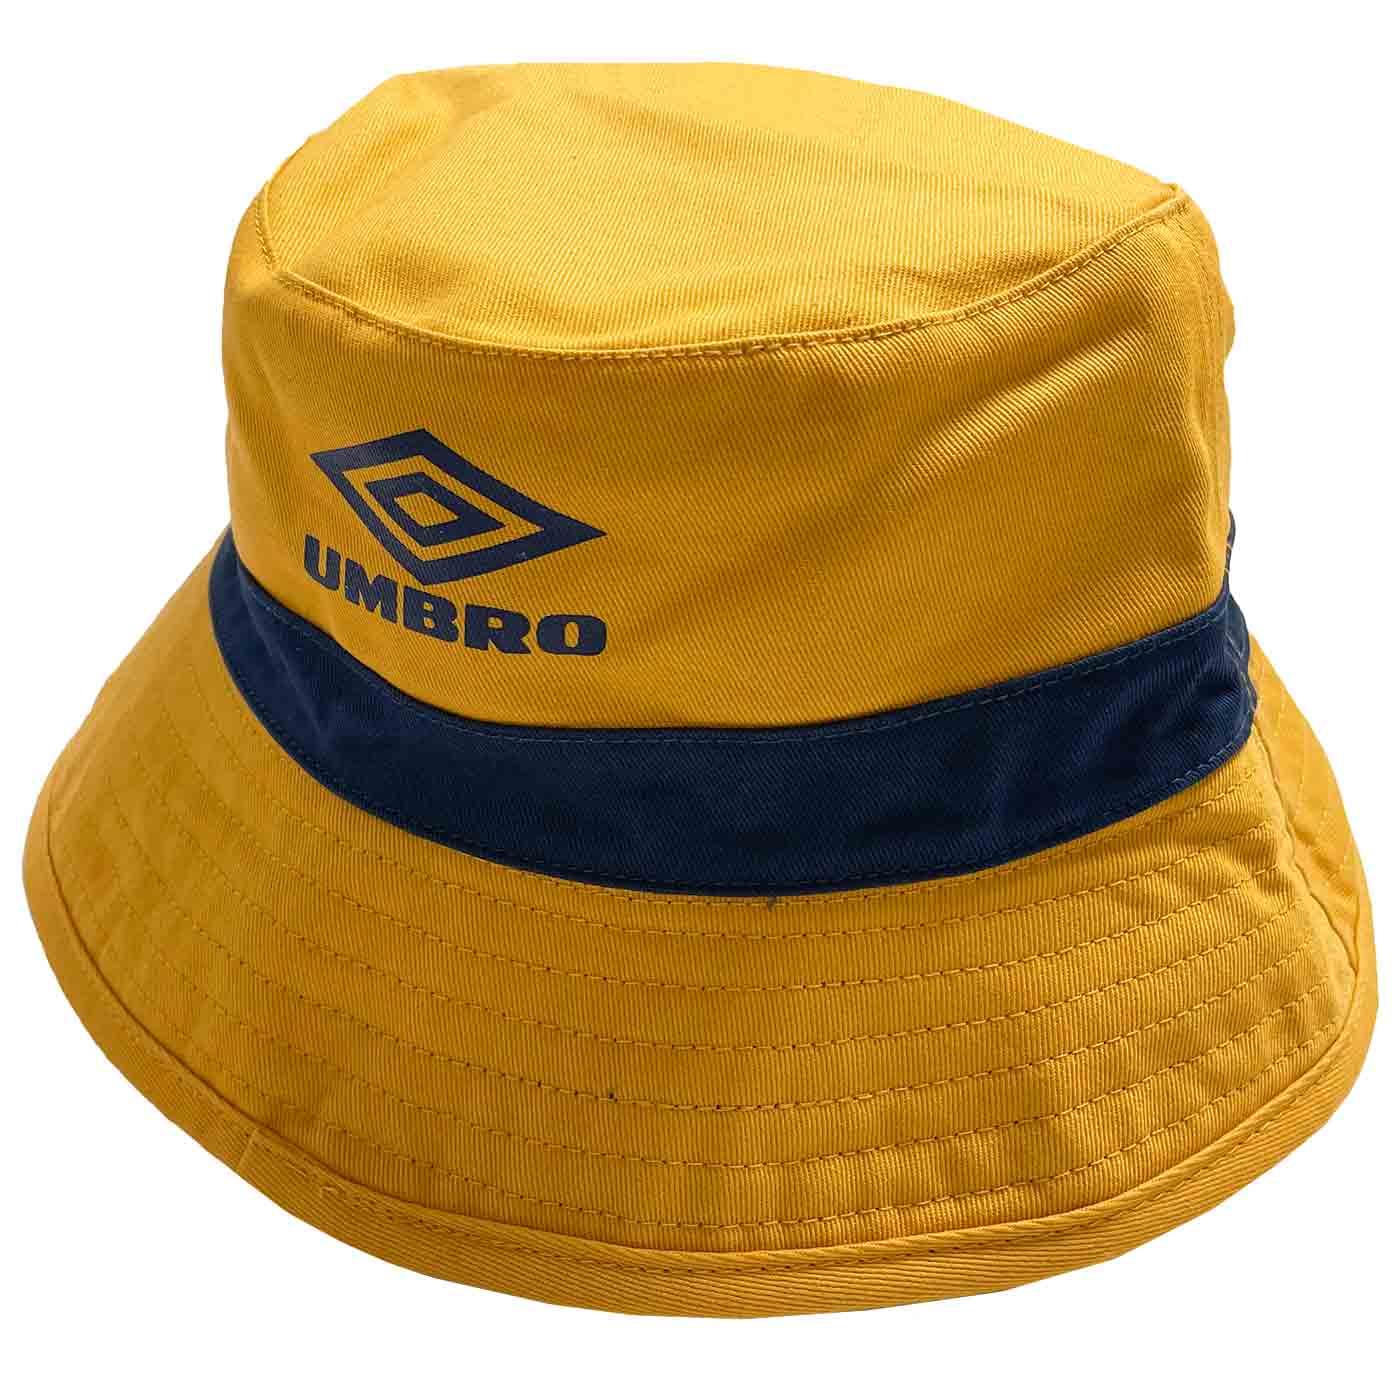 UMBRO x GIO Goi Retro 90s Reversible Bucket Hat